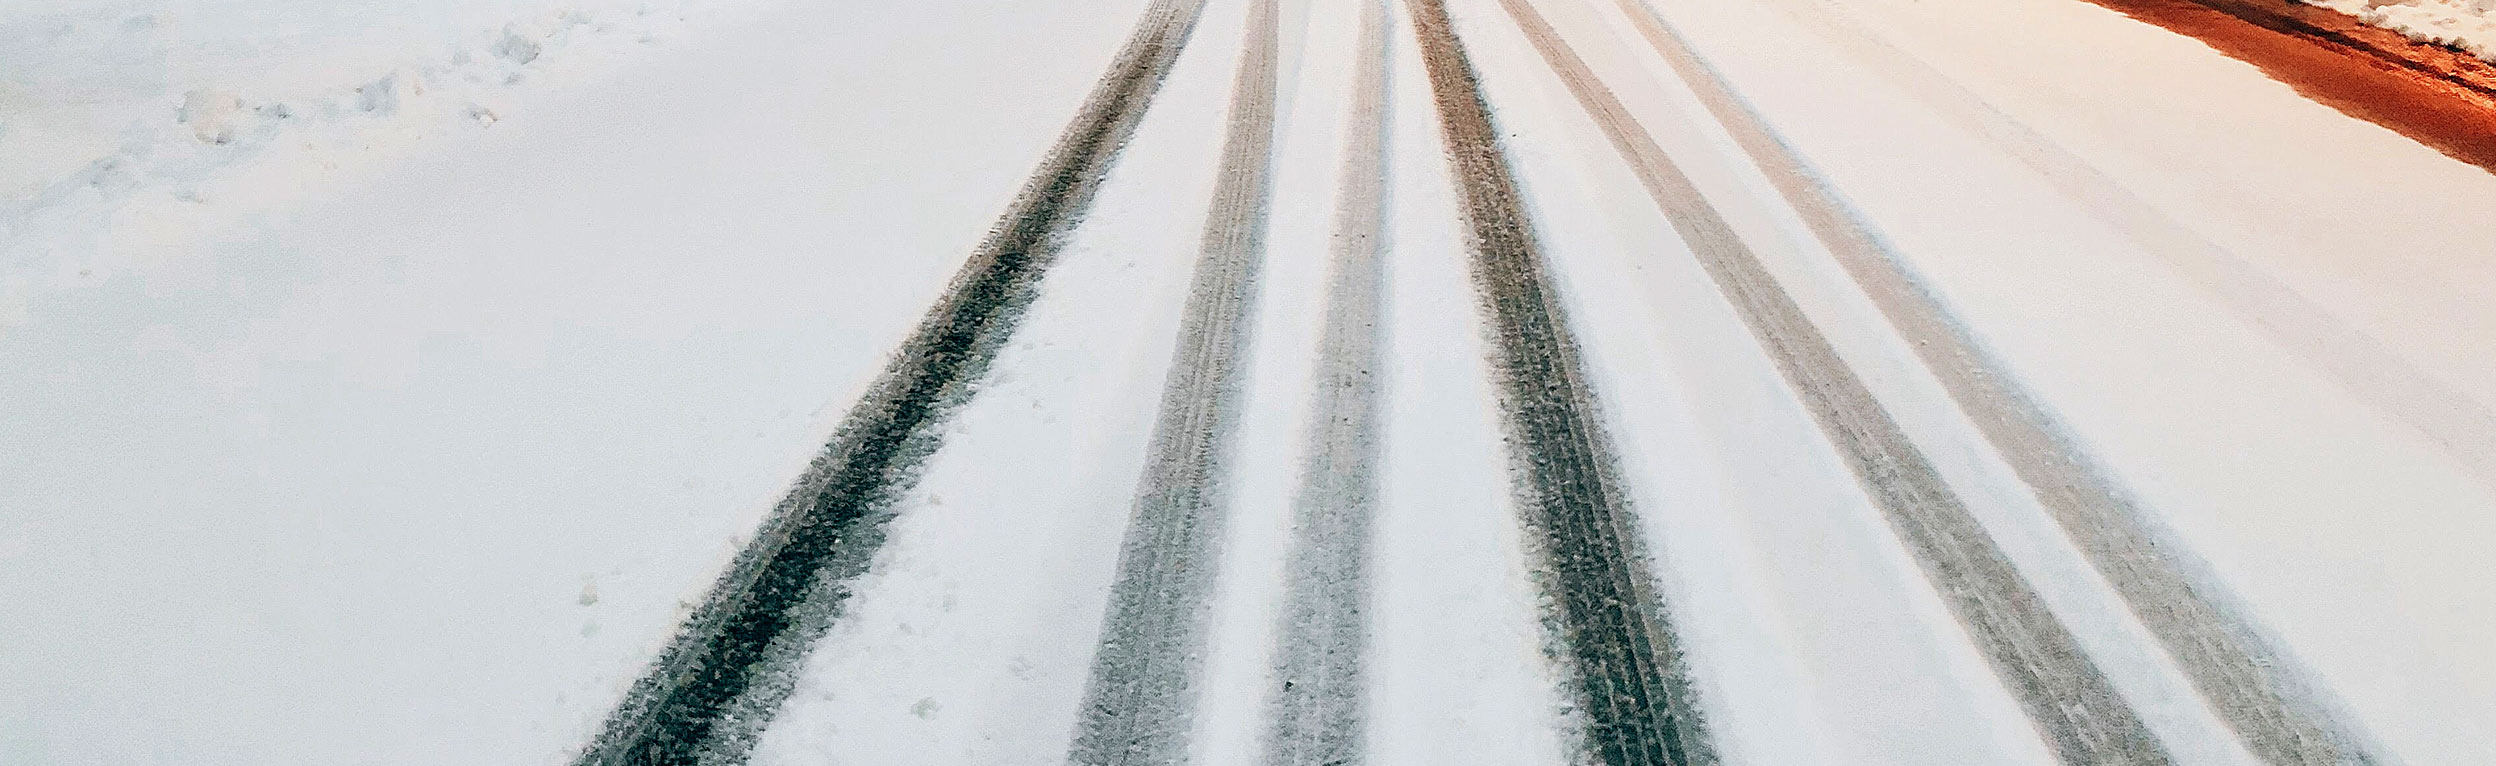 Hjulspor på vej med sne